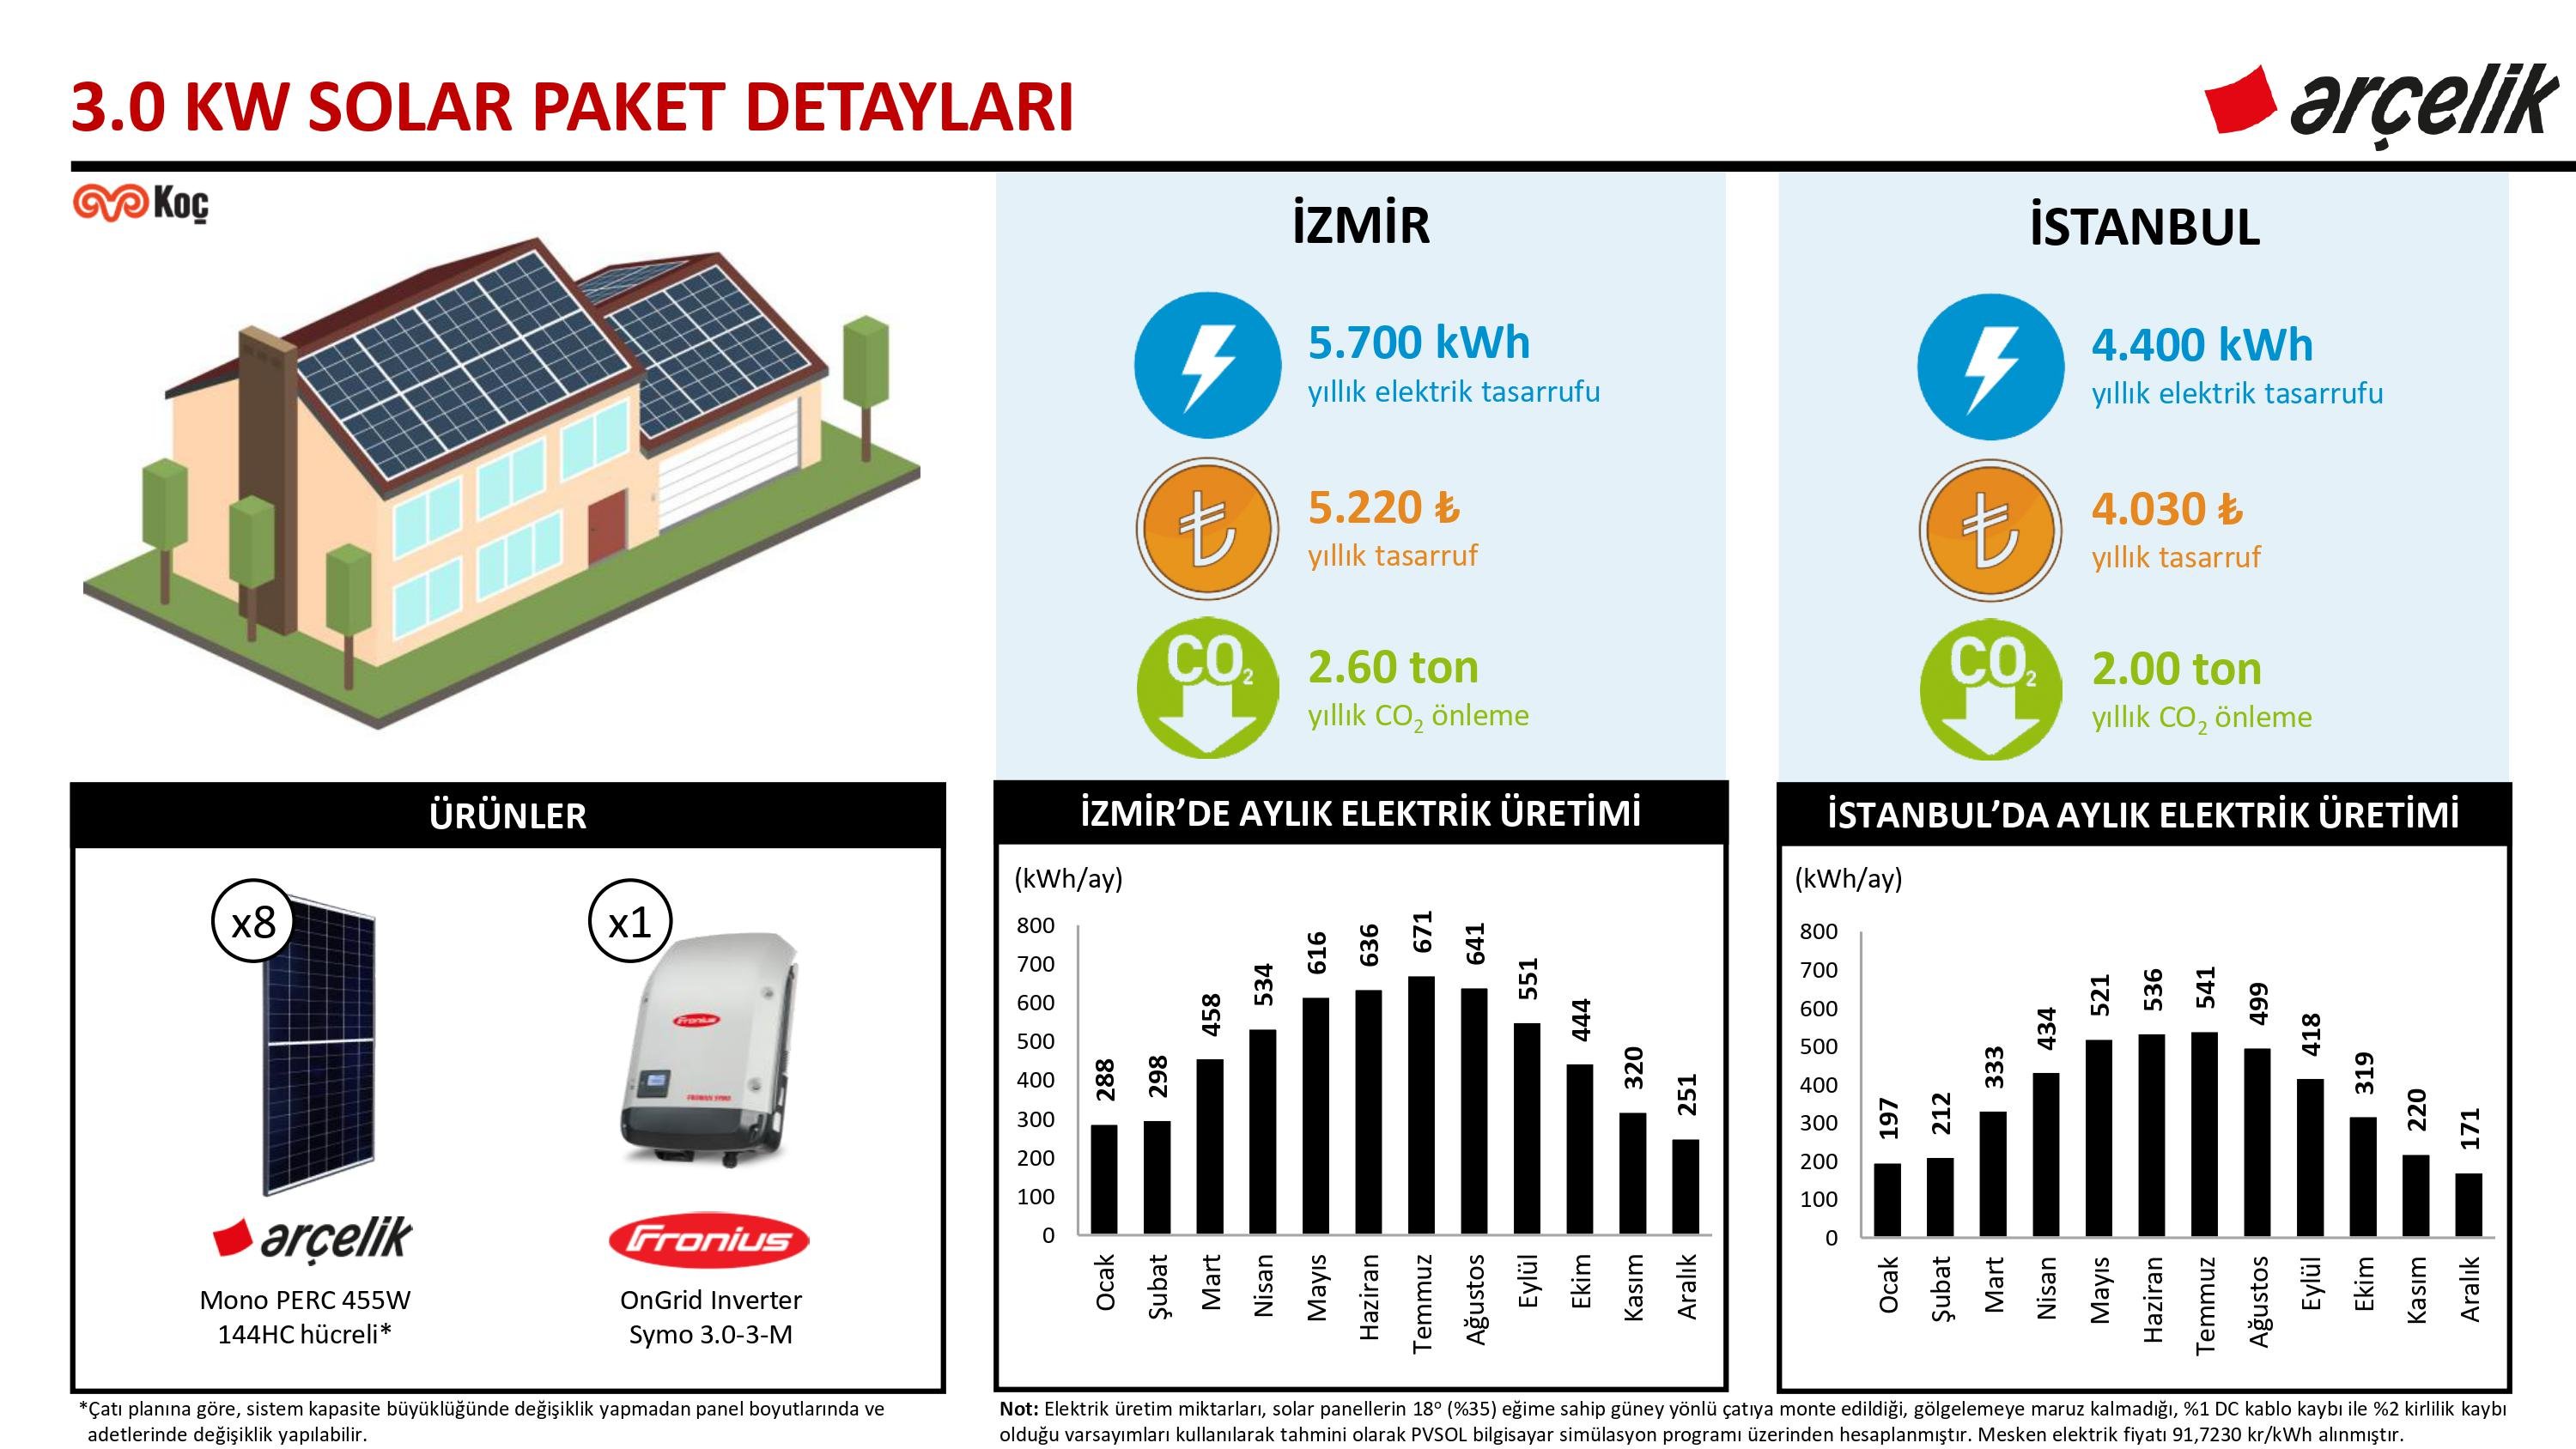 Arçelik 3.0 kW Solar Paket ve Yapı Kredi Leasing Detayları